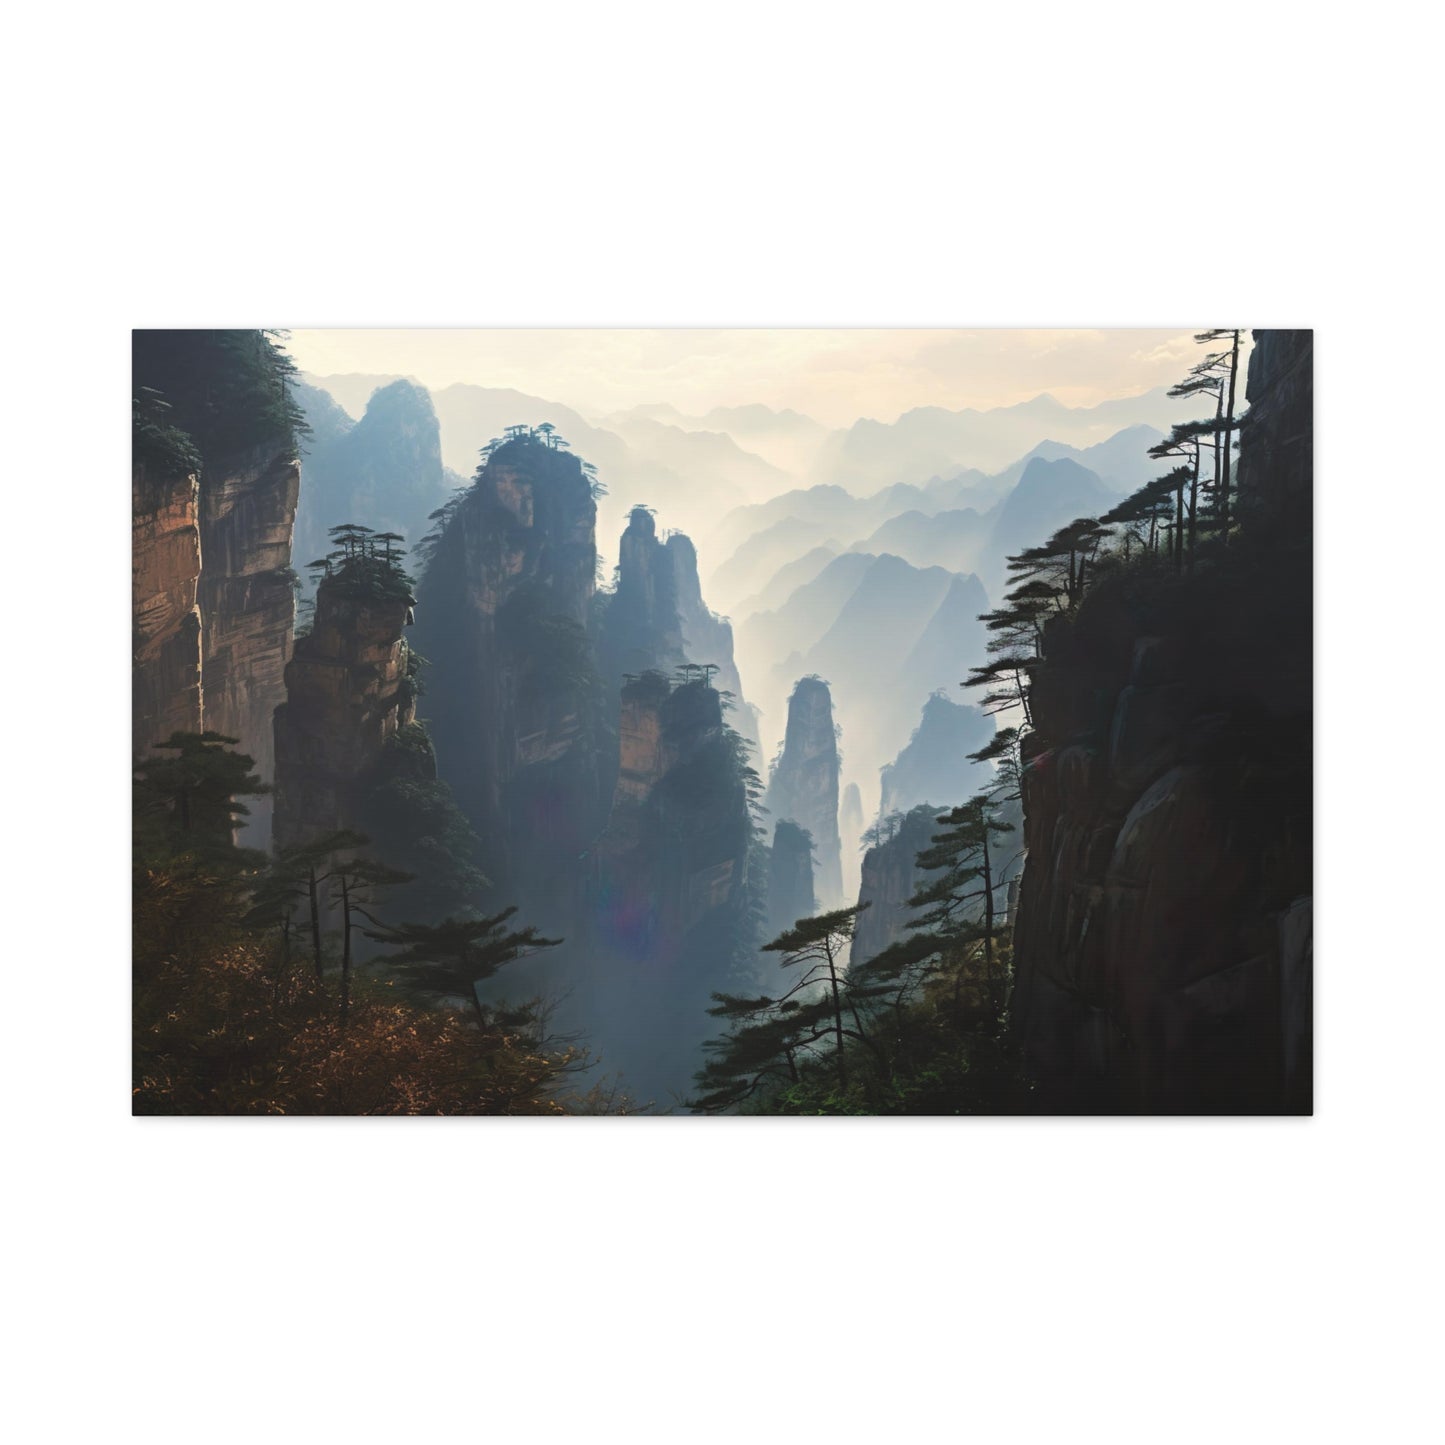 Tianzi Shan Mountain Peak in Zhangjiajie Canvas Print